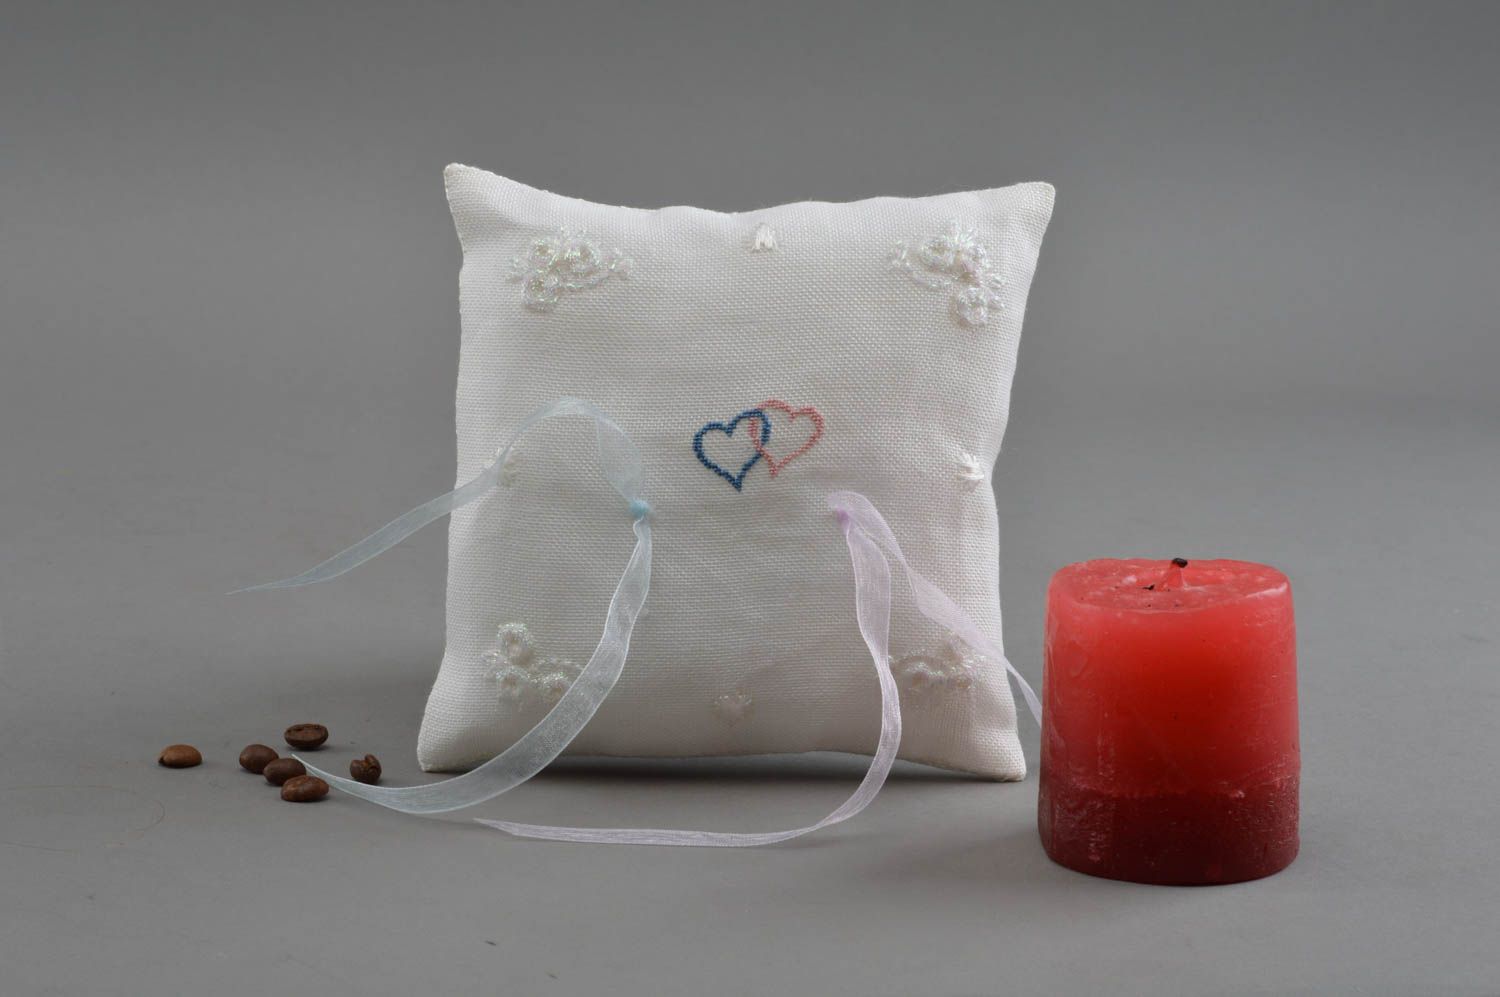 Авторская свадебная подушечка для колец ручной работы из льна с ленточками фото 1